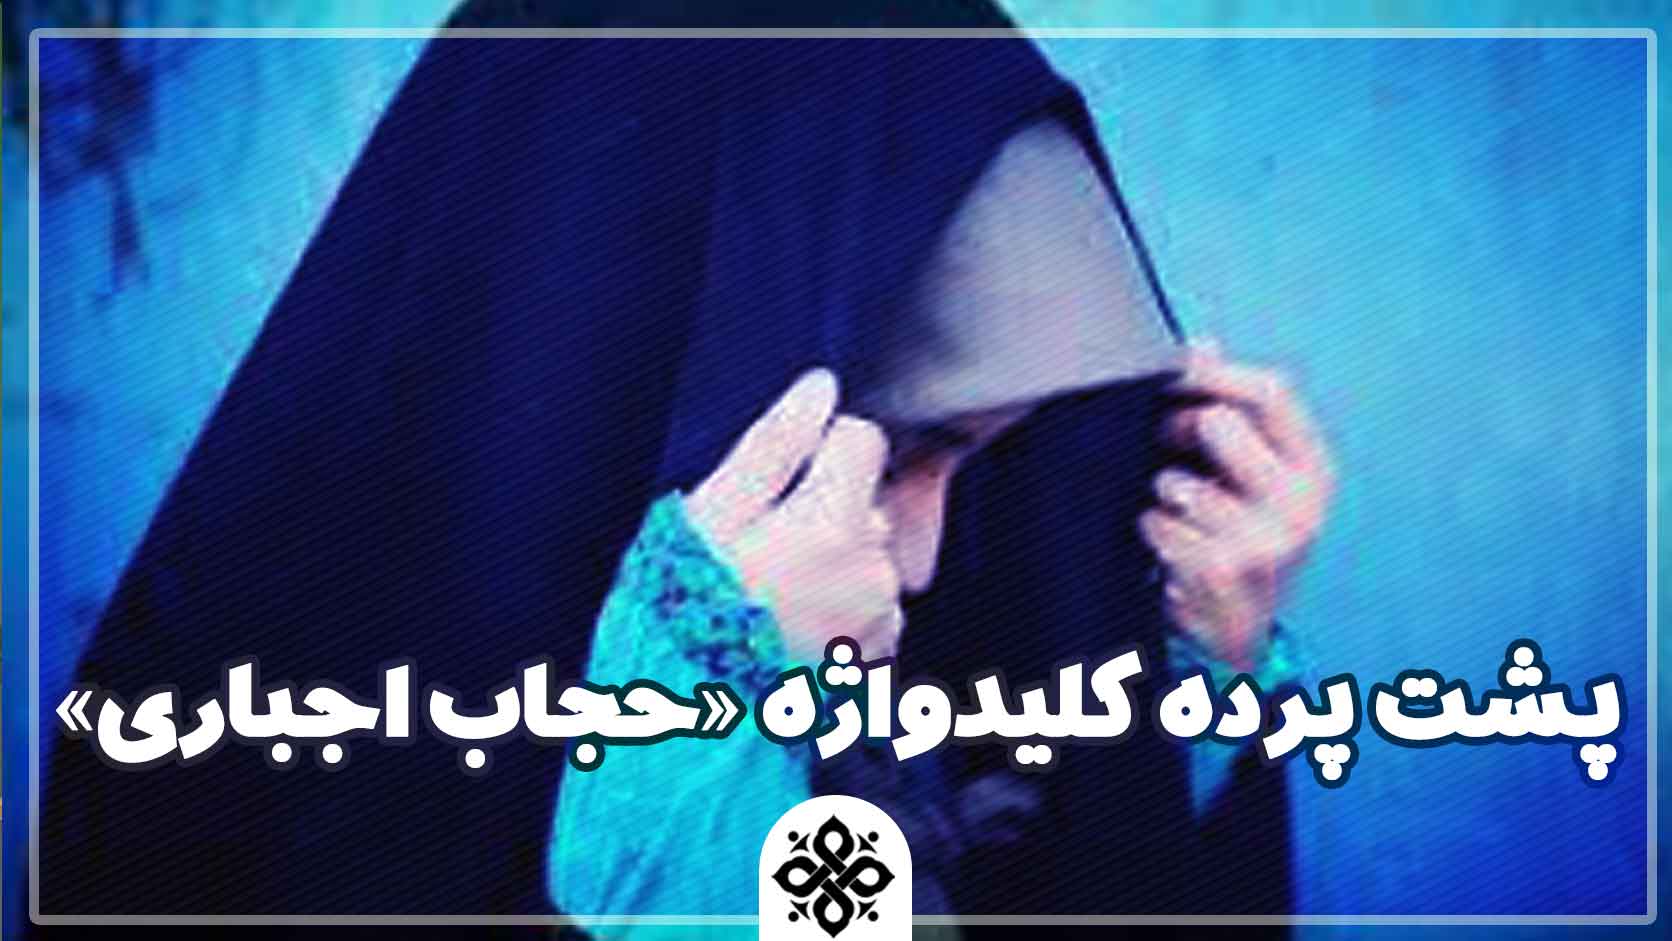 پشت پرده کلیدواژه «حجاب اجباری»